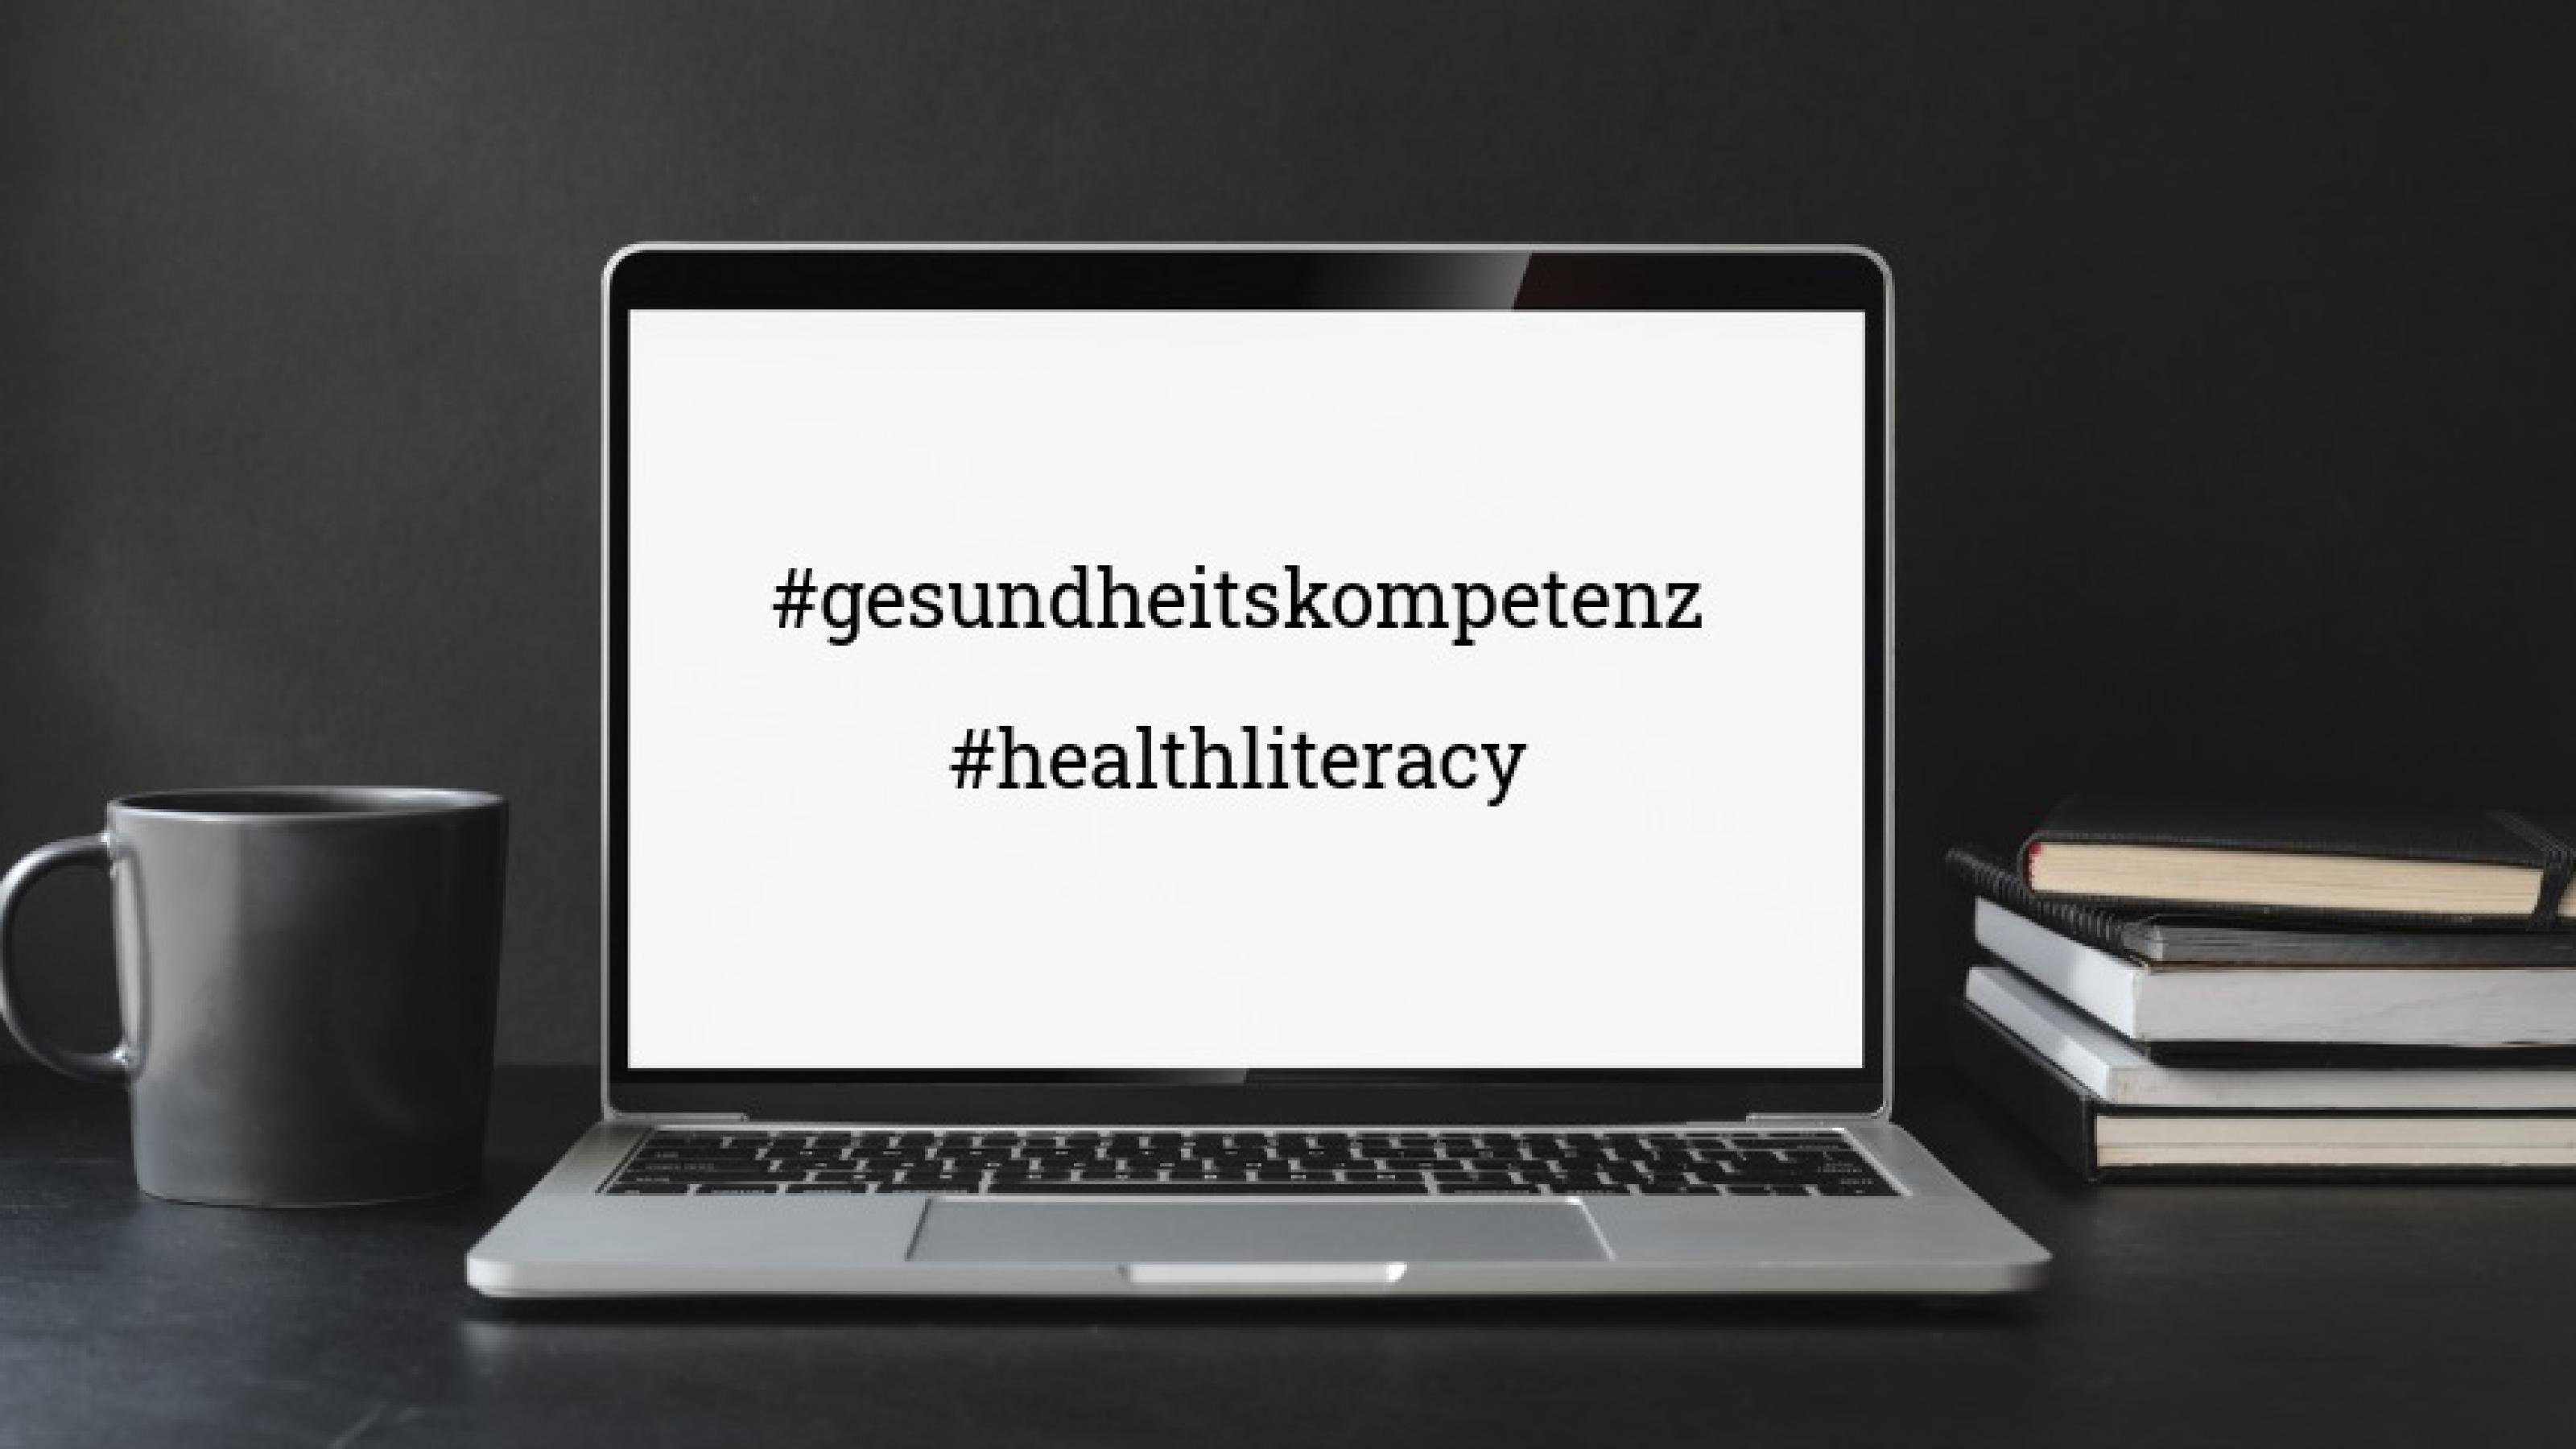 Zwischen einer Tasse auf der linken Seite und einem Bücherstapel auf der rechten Seite steht ein aufgeklappter Laptop. Auf dem Screen sind die Hashtags #gesundheitskompetenz und #healthliteracy zu sehen.